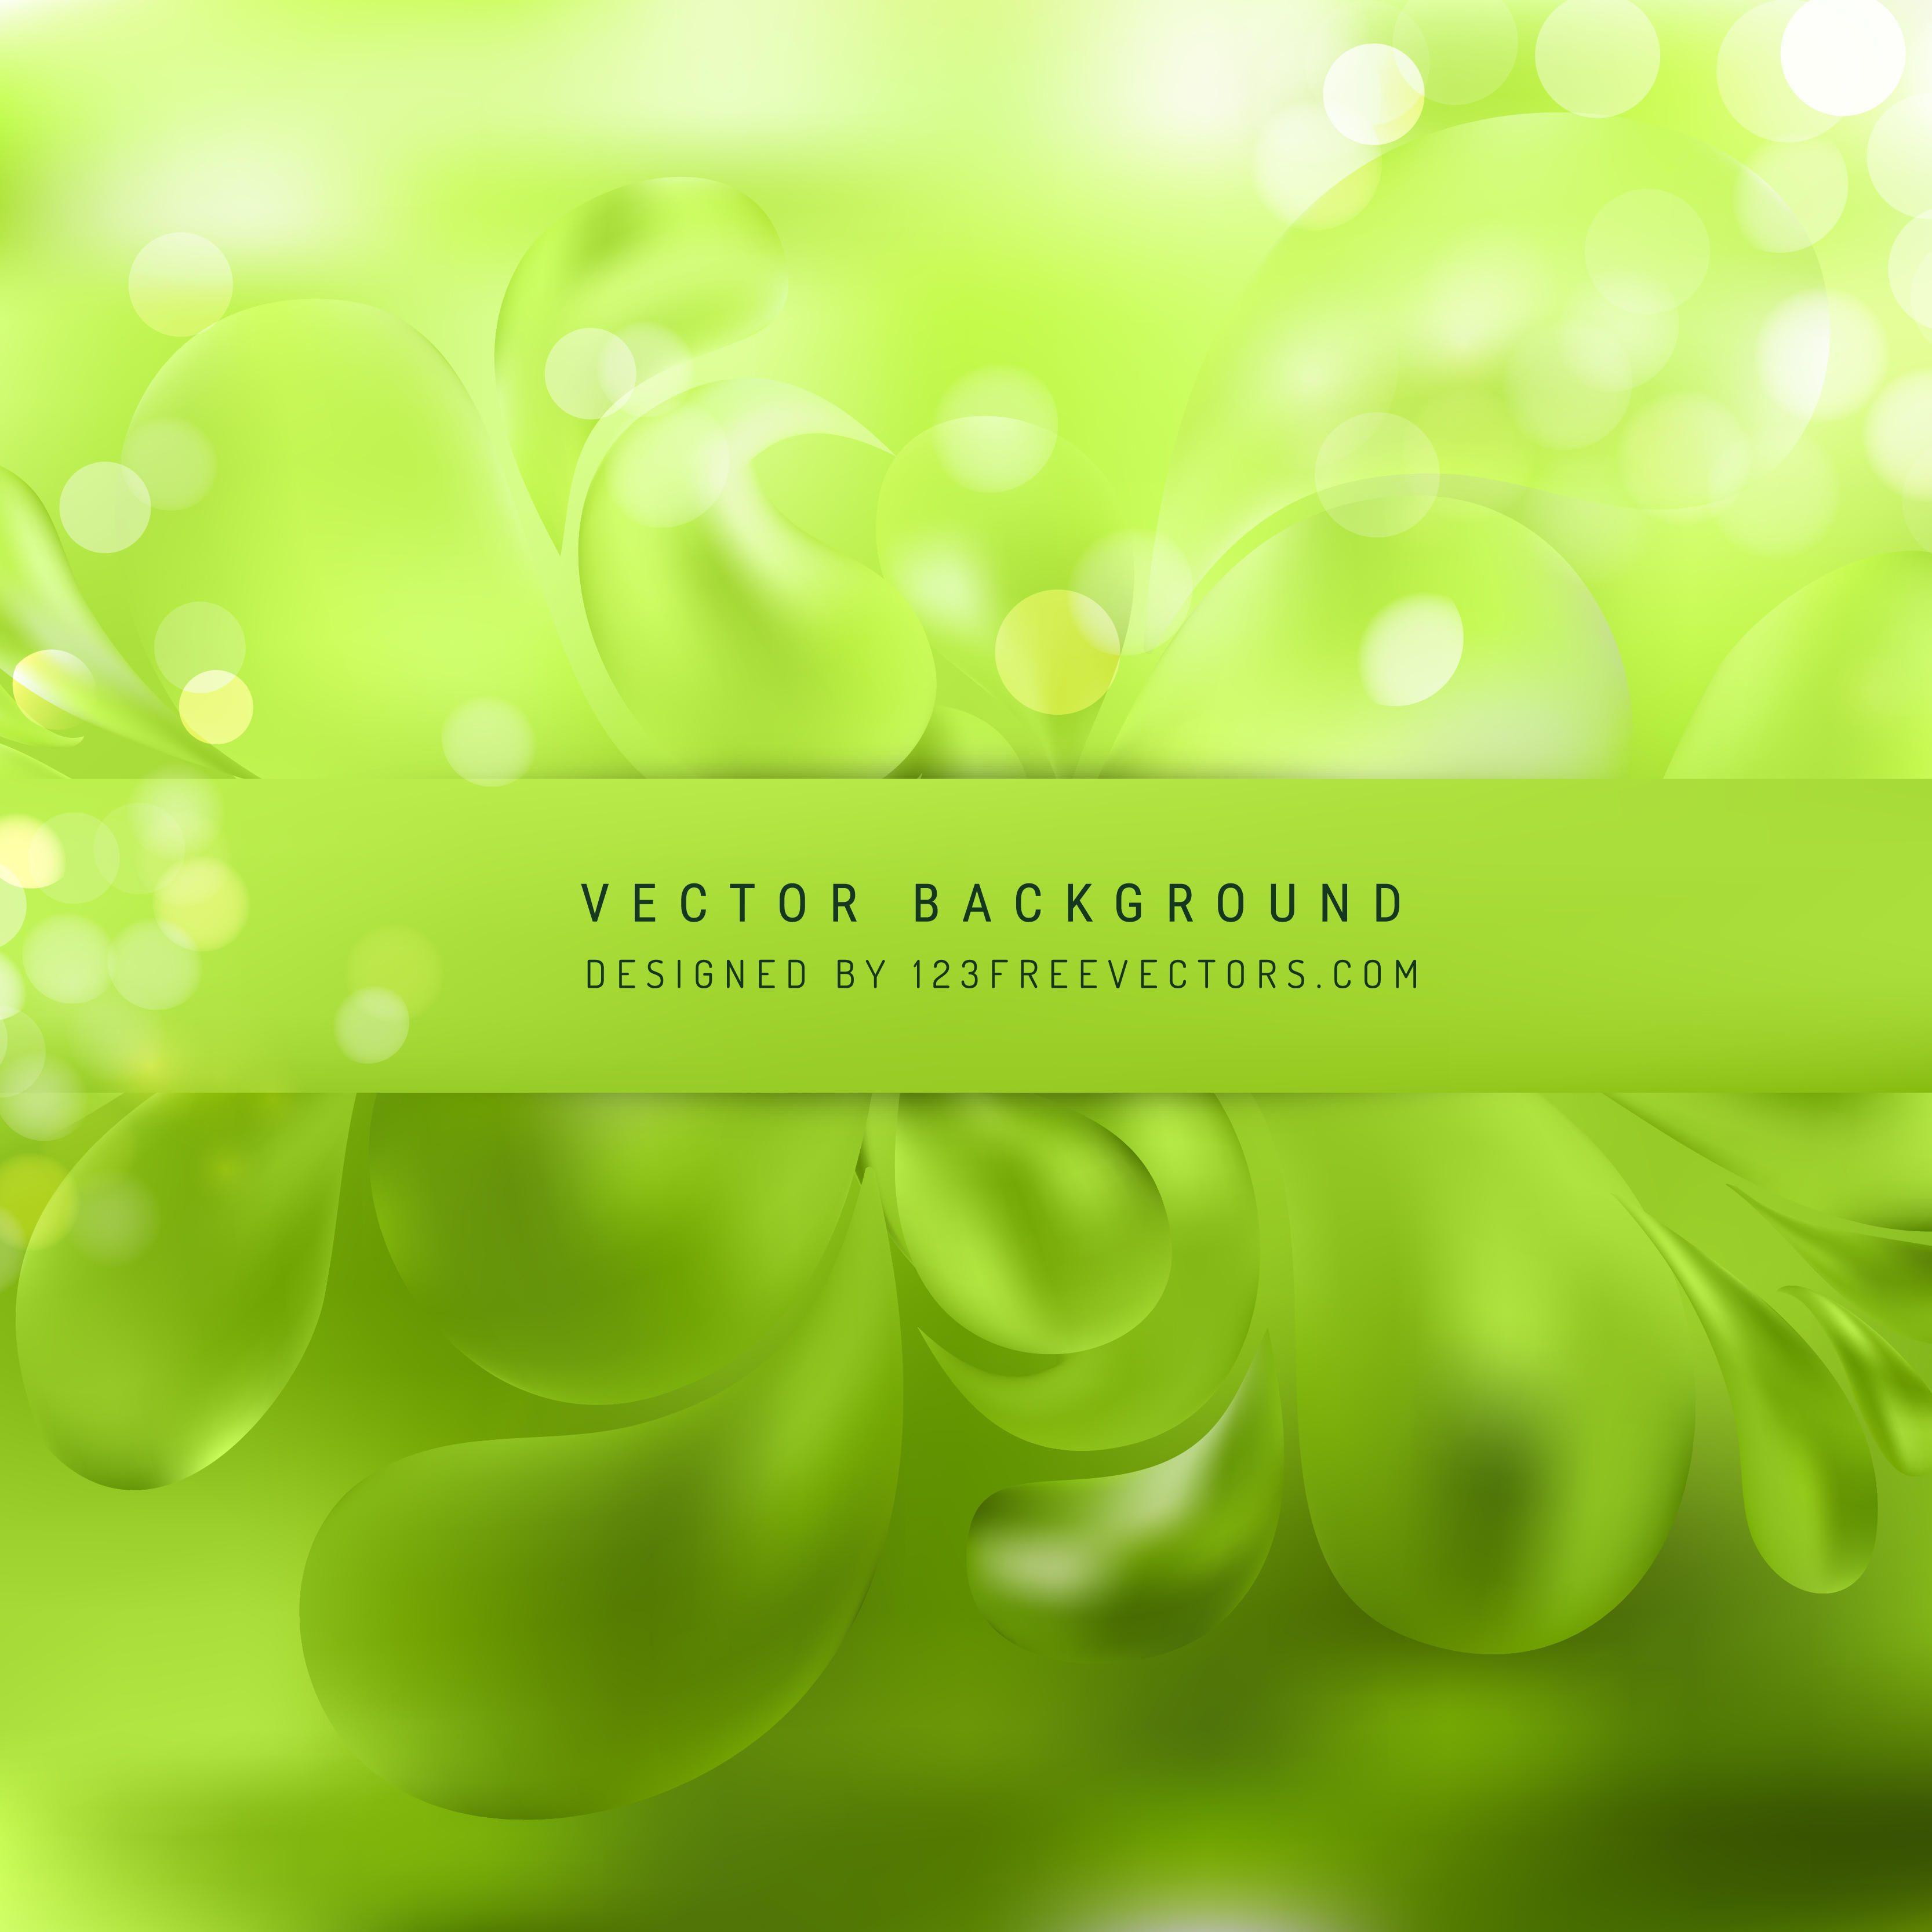 Green Background Vectors. Download Free Vector Art & Graphics